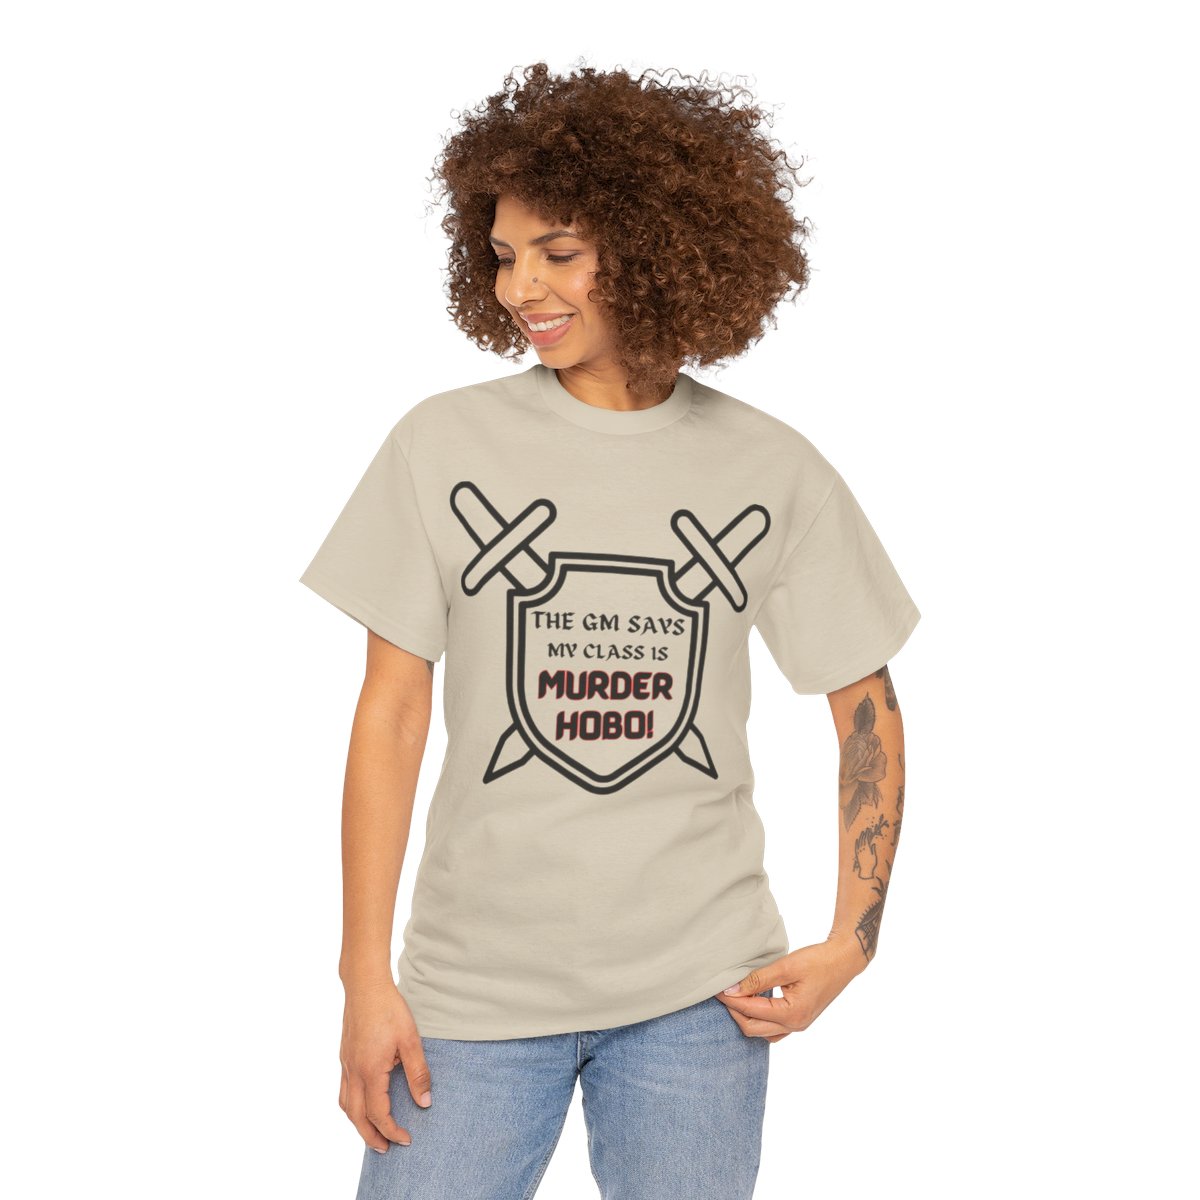 Gamer T-shirt, Gamer Joke Shirt, RPG tee shirt product thumbnail image